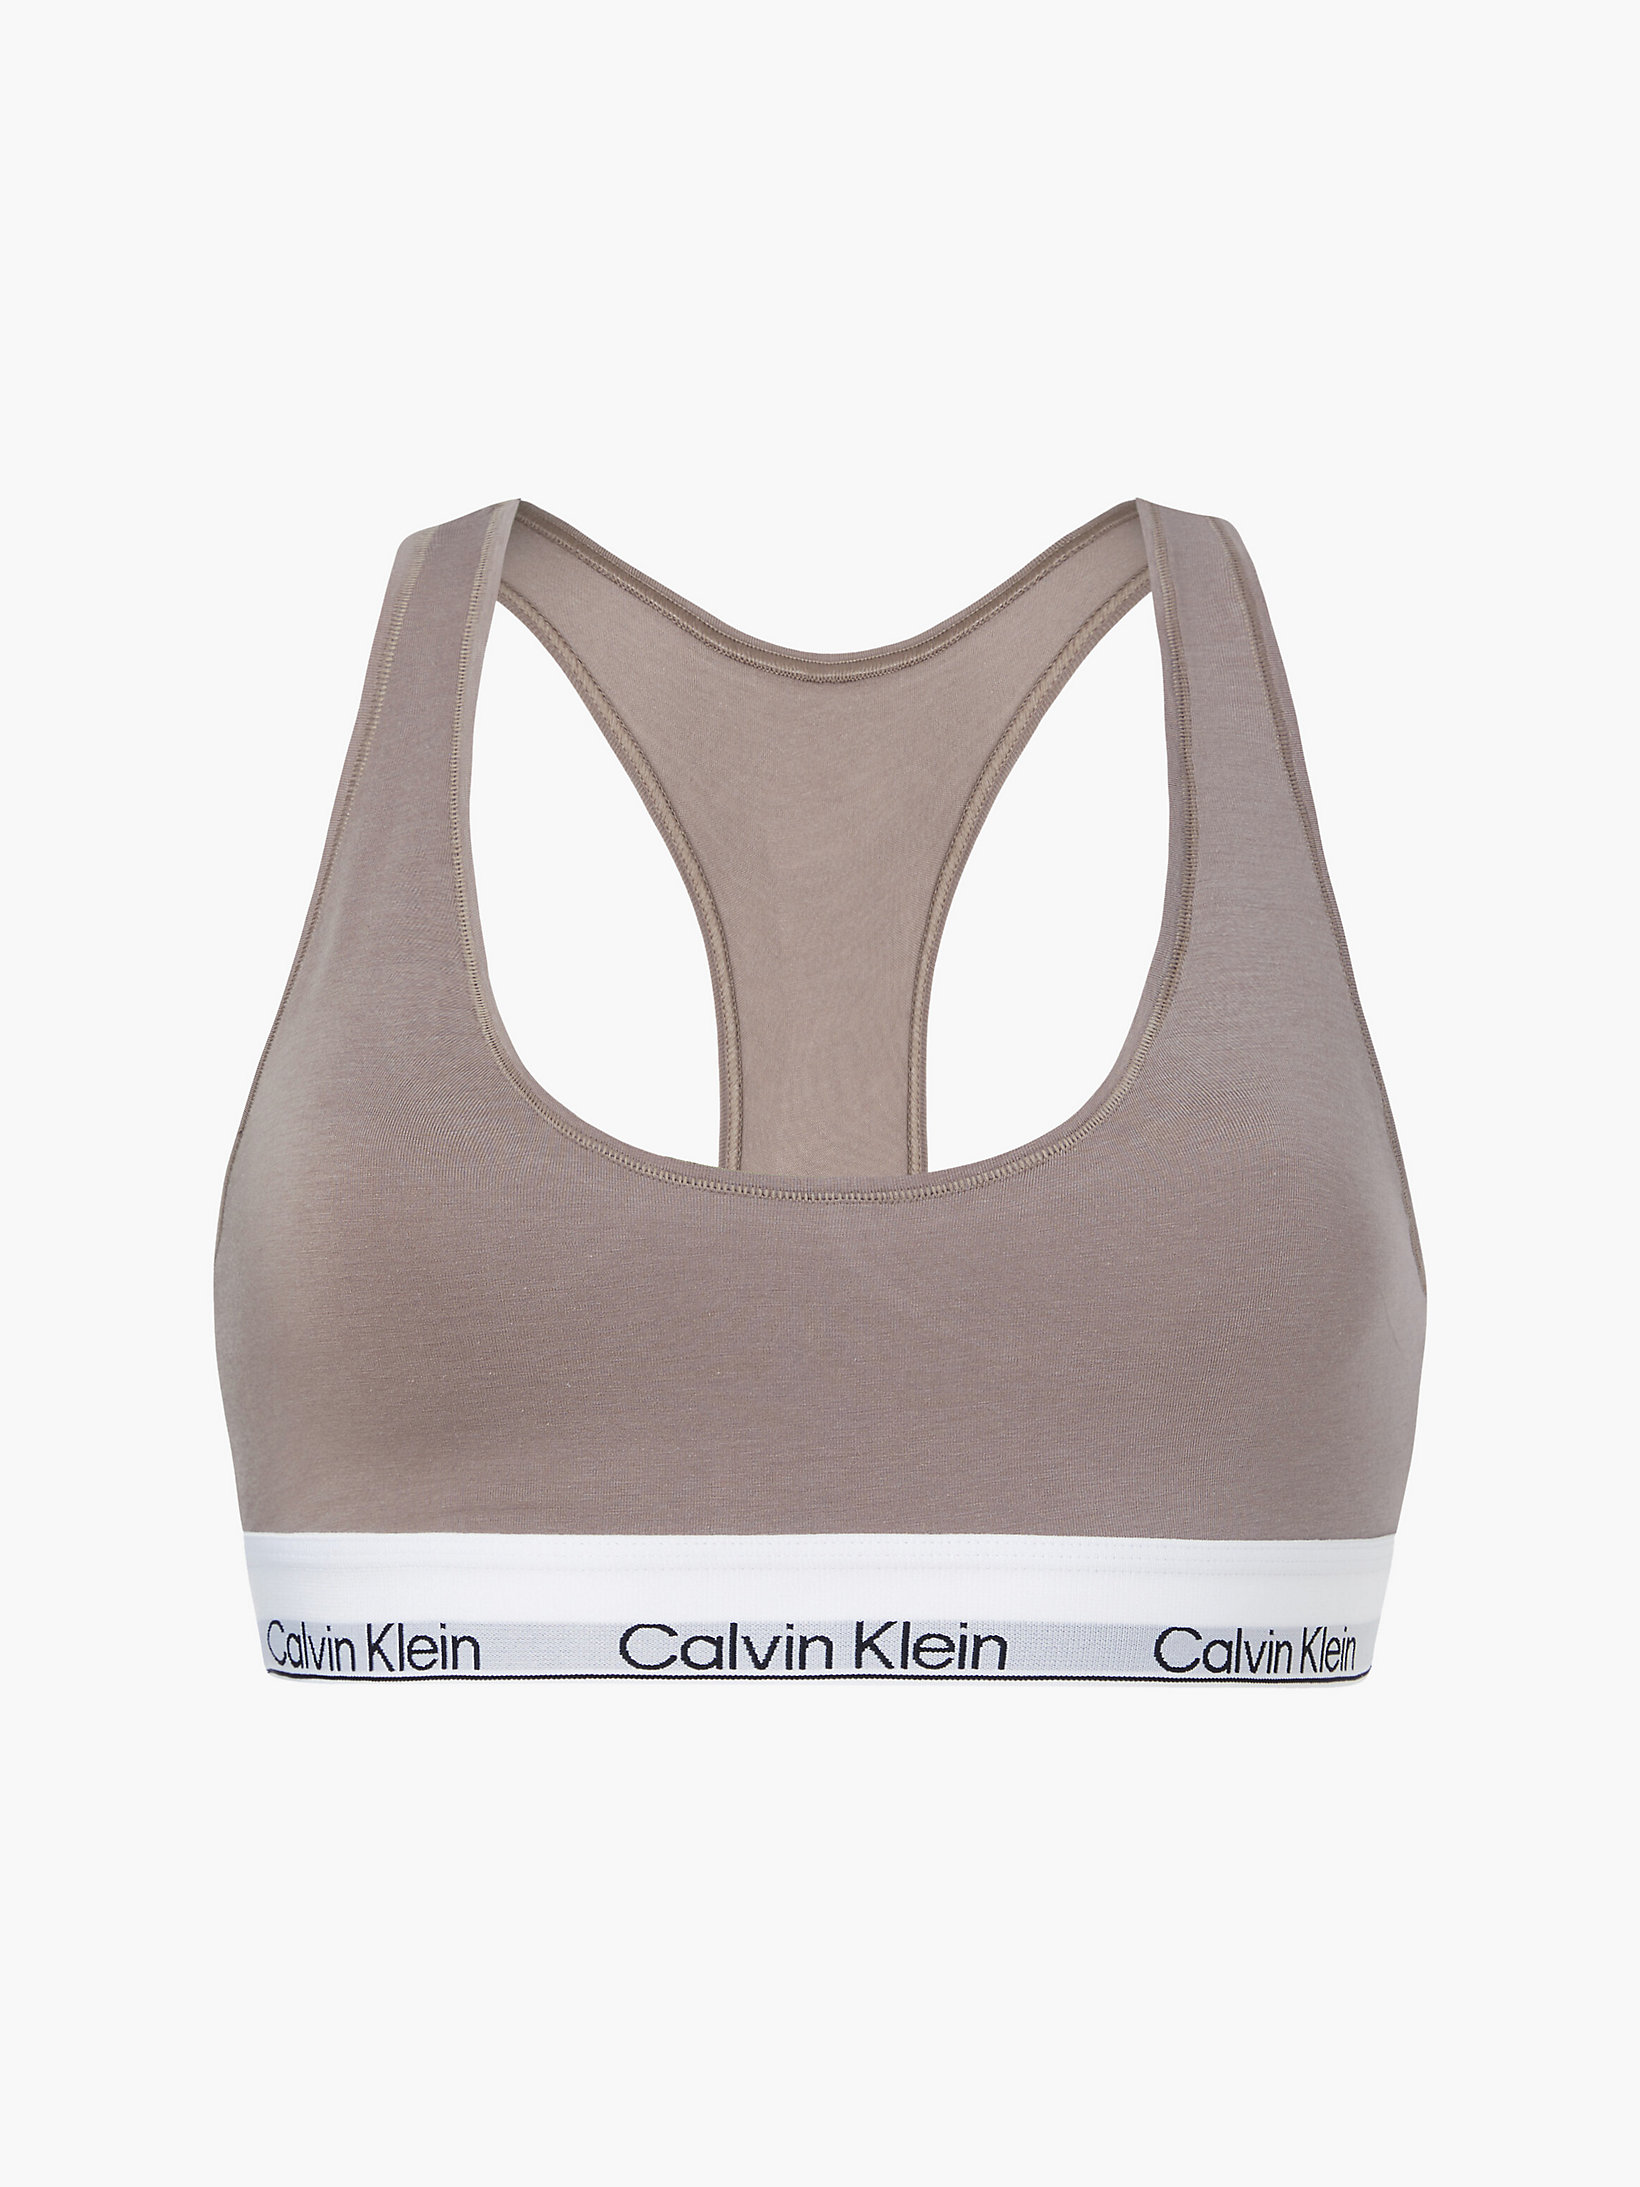 Brassière - Modern Cotton > Rich Taupe > undefined femmes > Calvin Klein